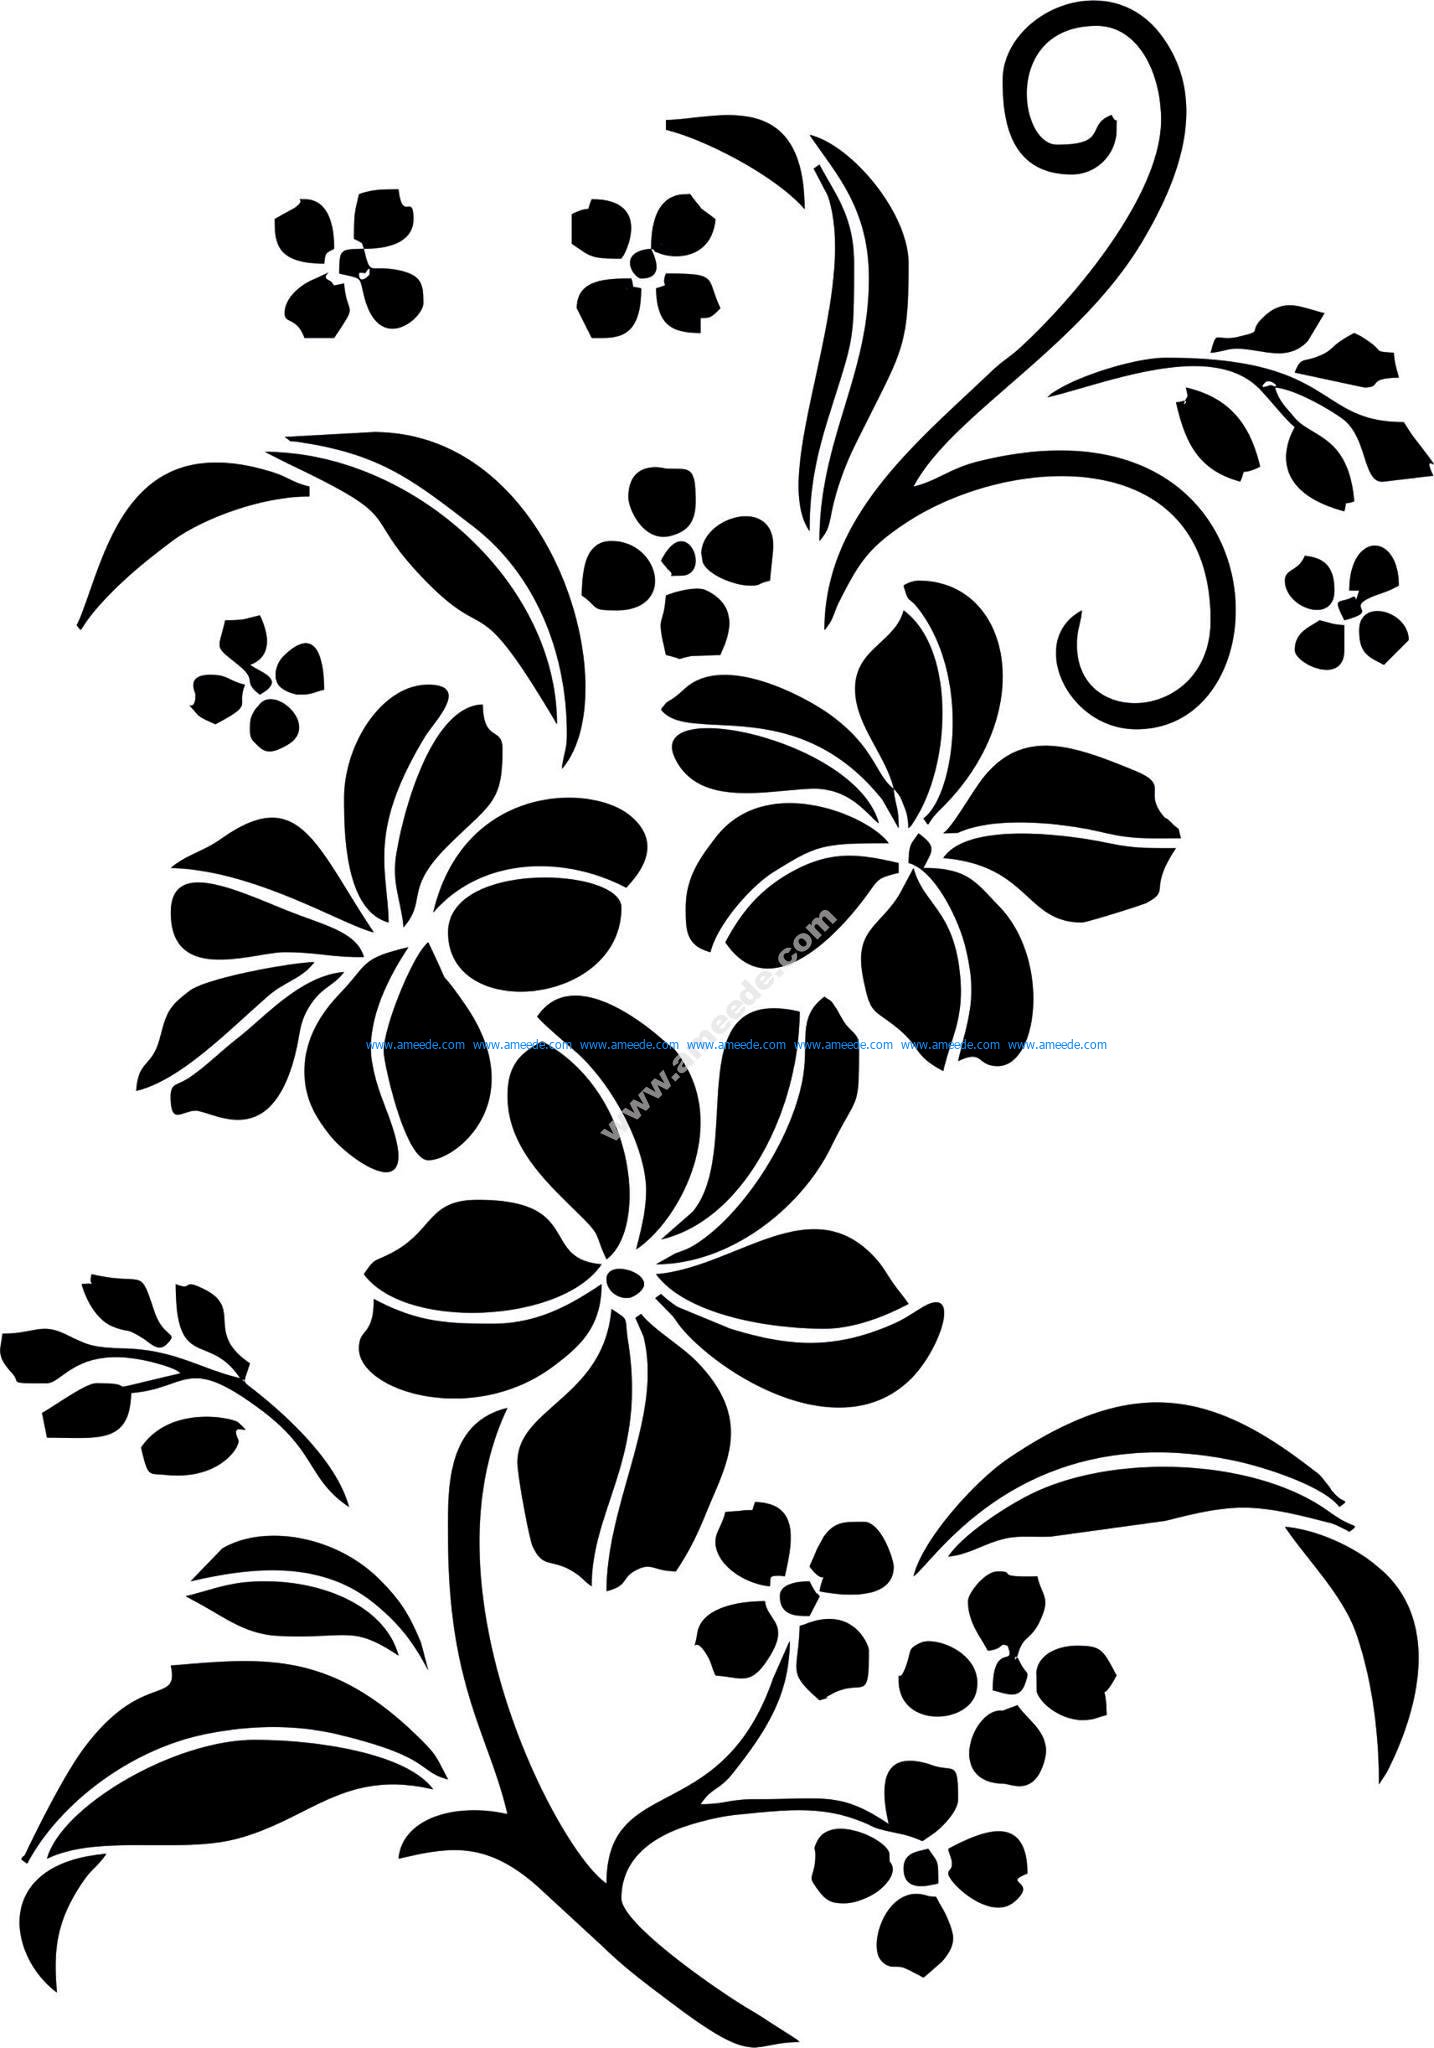 Download Decorative Floral Ornament Vector Art jpg - Download Vector